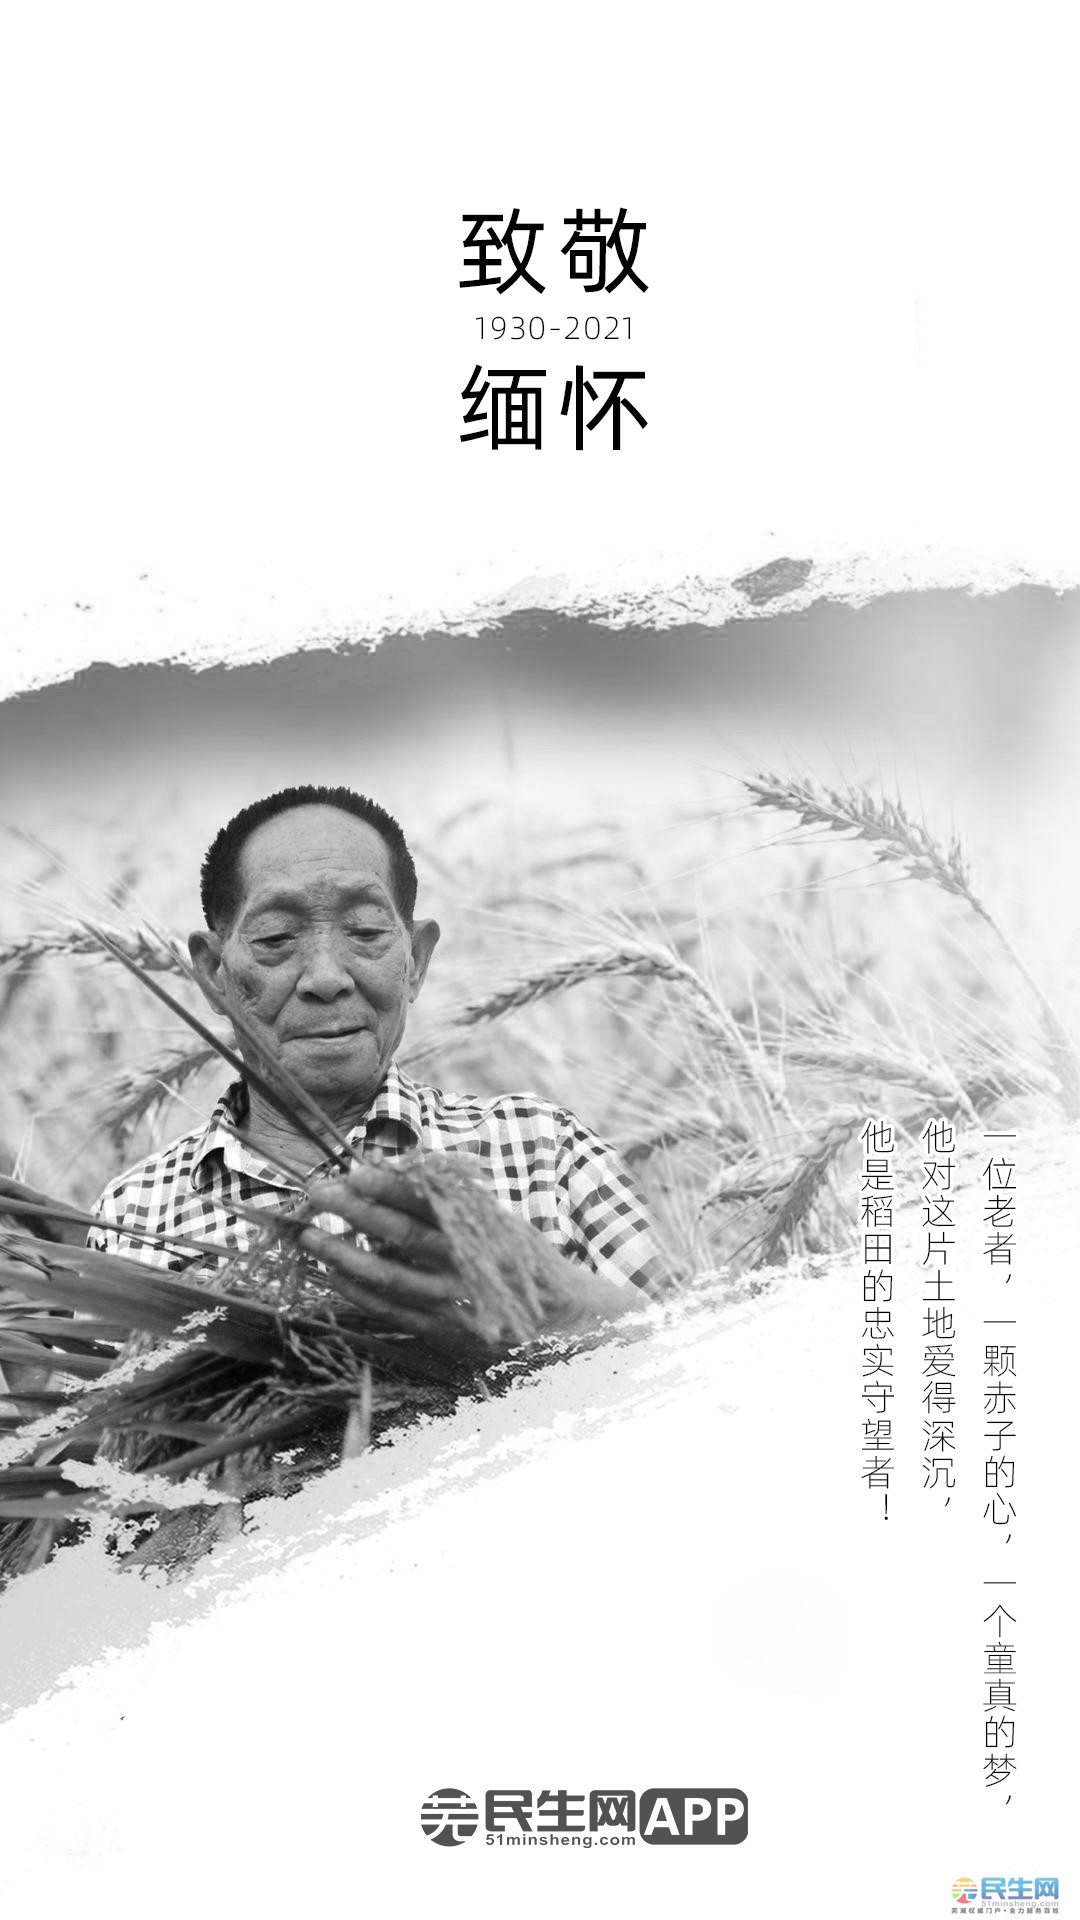 致敬缅怀!13点07分,"杂交水稻之父"袁隆平逝世,享年91